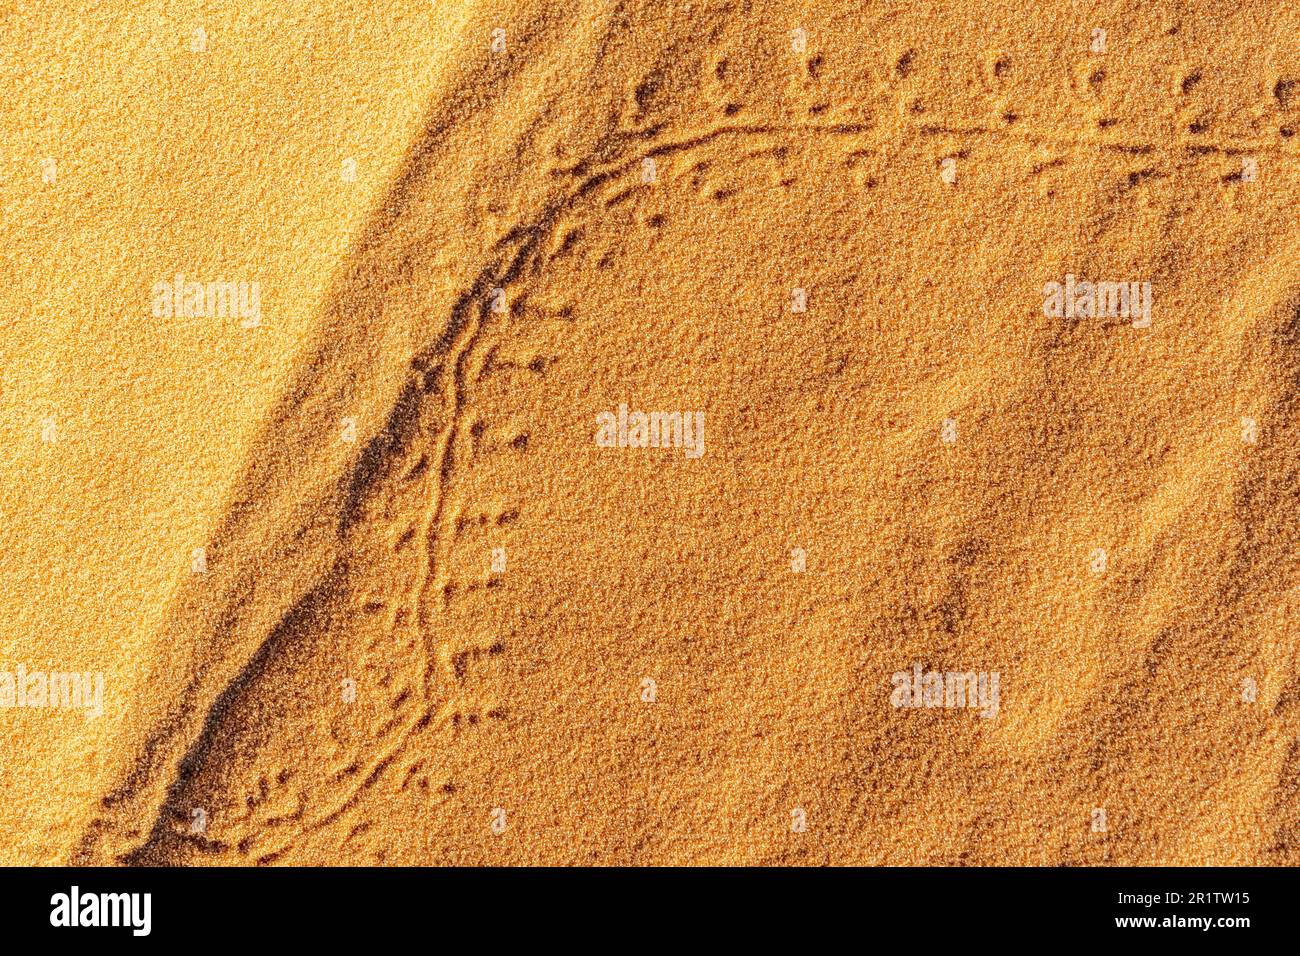 Empreintes d'un petit animal ou de traces d'insectes dessinant deux arcs sur le sable rouge doré du désert du Sahara. Gros plan de la vue en hauteur de la macro. Banque D'Images